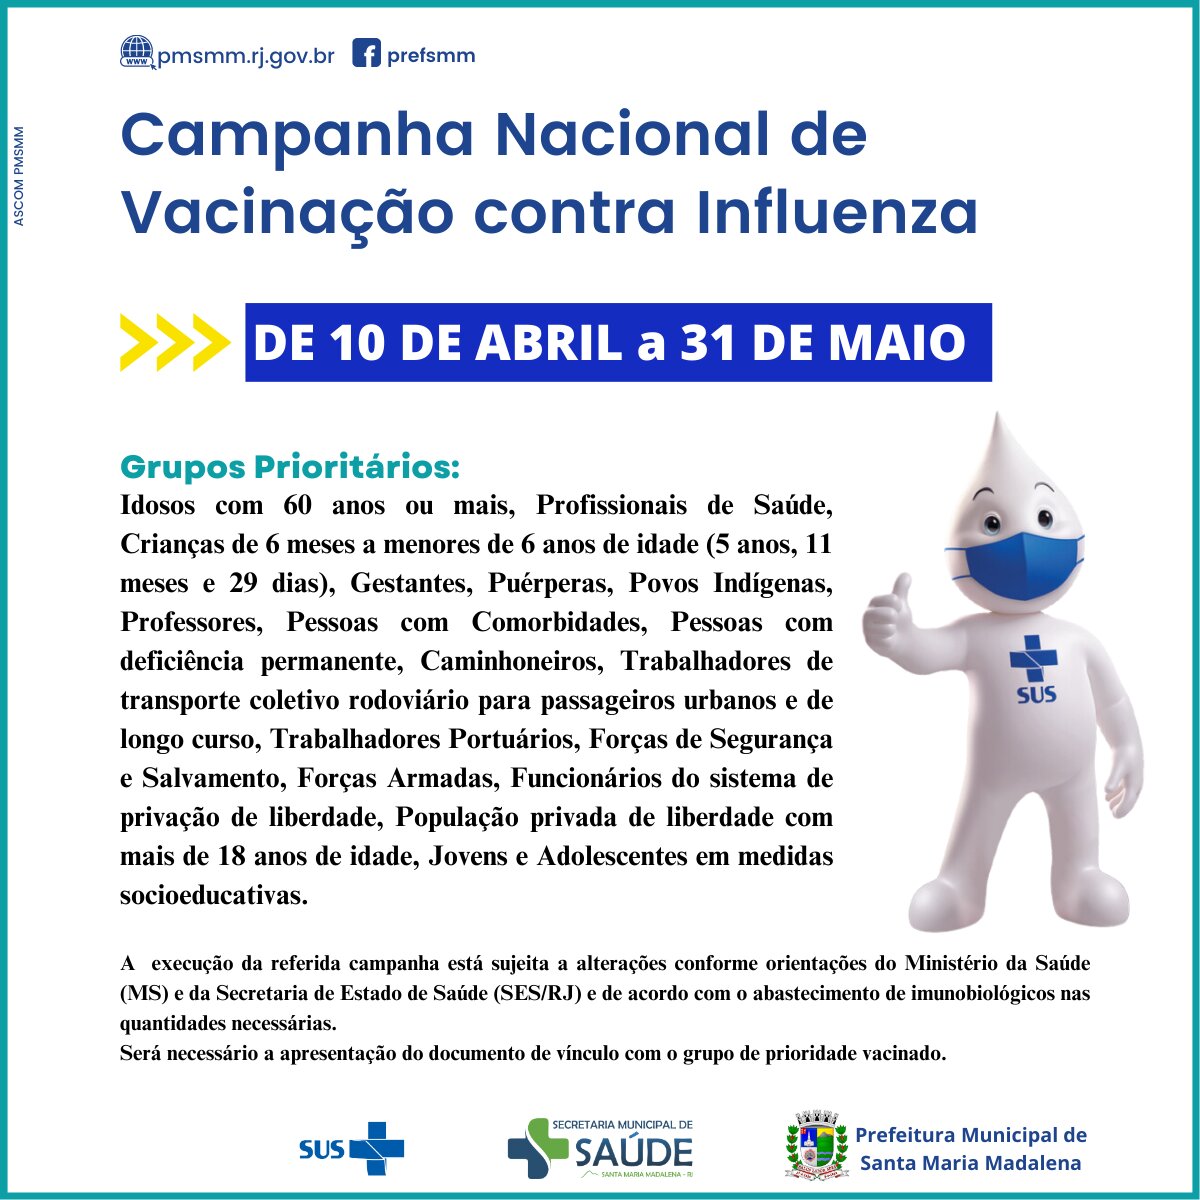 Vacinação contra a Influenza começa nesta quarta-feira em Santa Maria Madalena